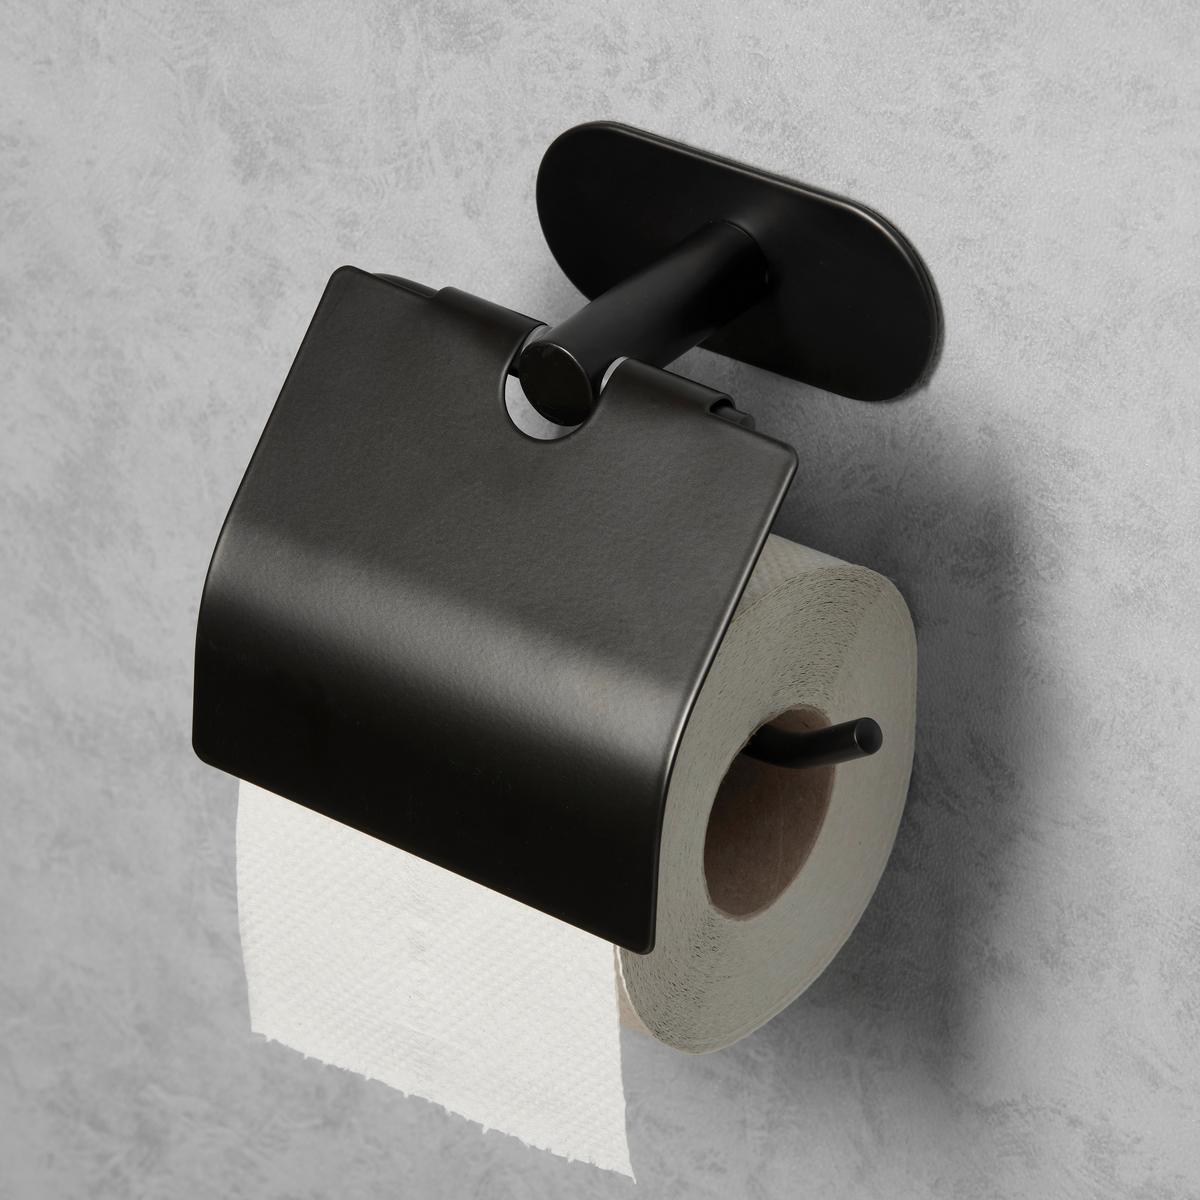 Toilettenpapierhalter in Schwarz bestellen - Jetzt